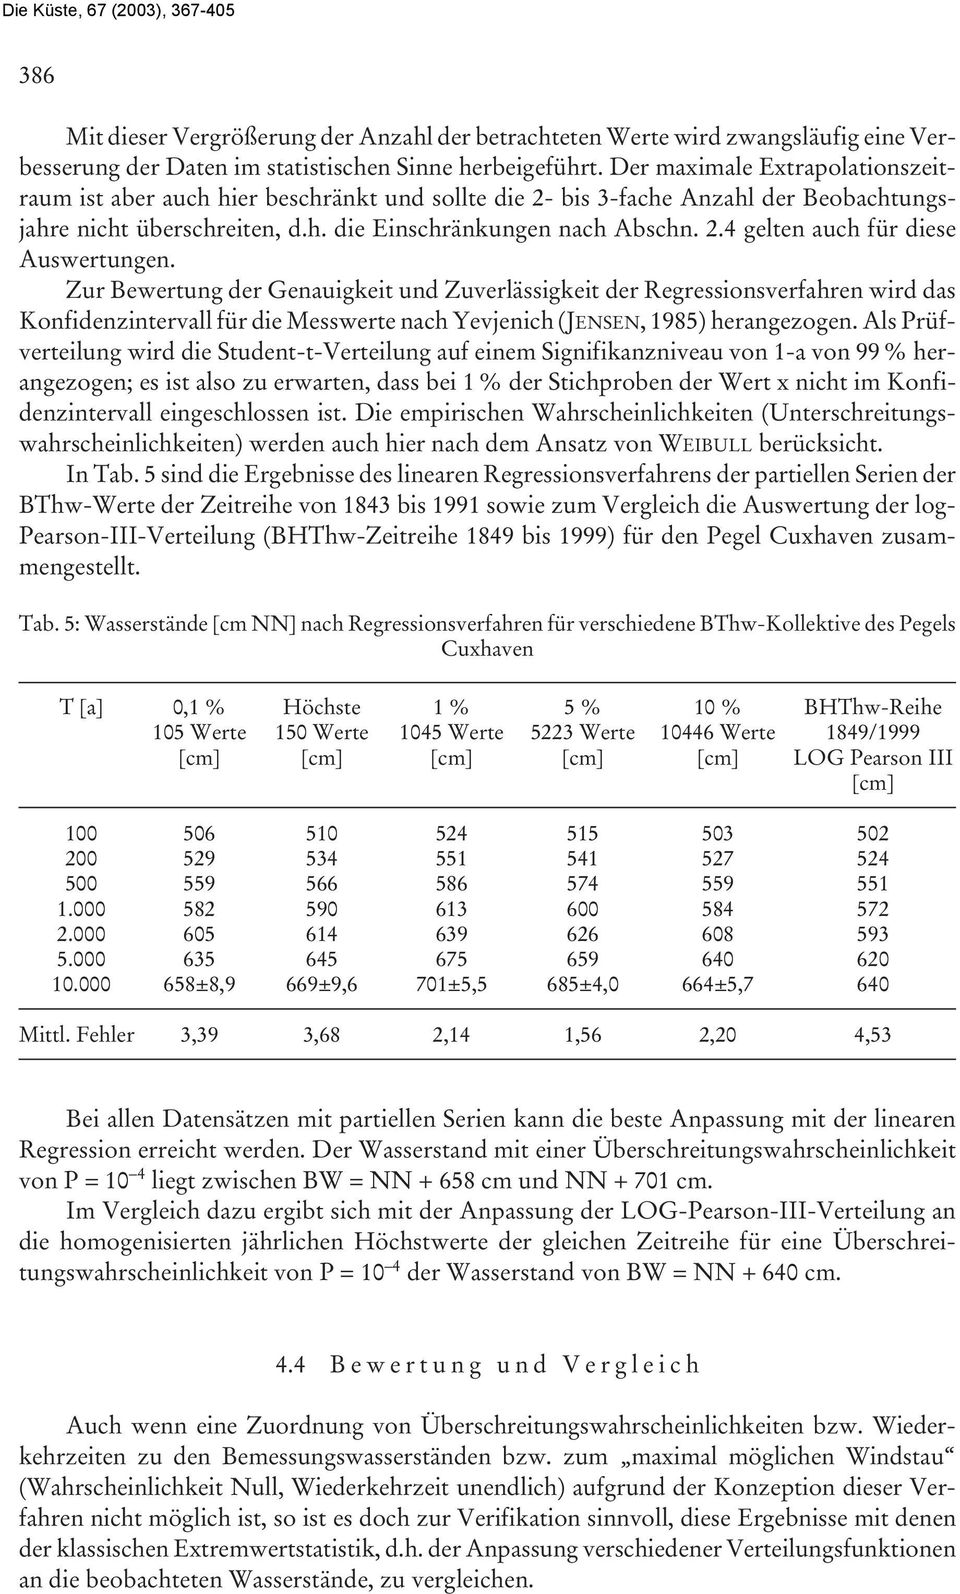 Zur Bewertung der Genauigkeit und Zuverlässigkeit der Regressionsverfahren wird das Konfidenzintervall für die Messwerte nach Yevjenich (JENSEN, 1985) herangezogen.